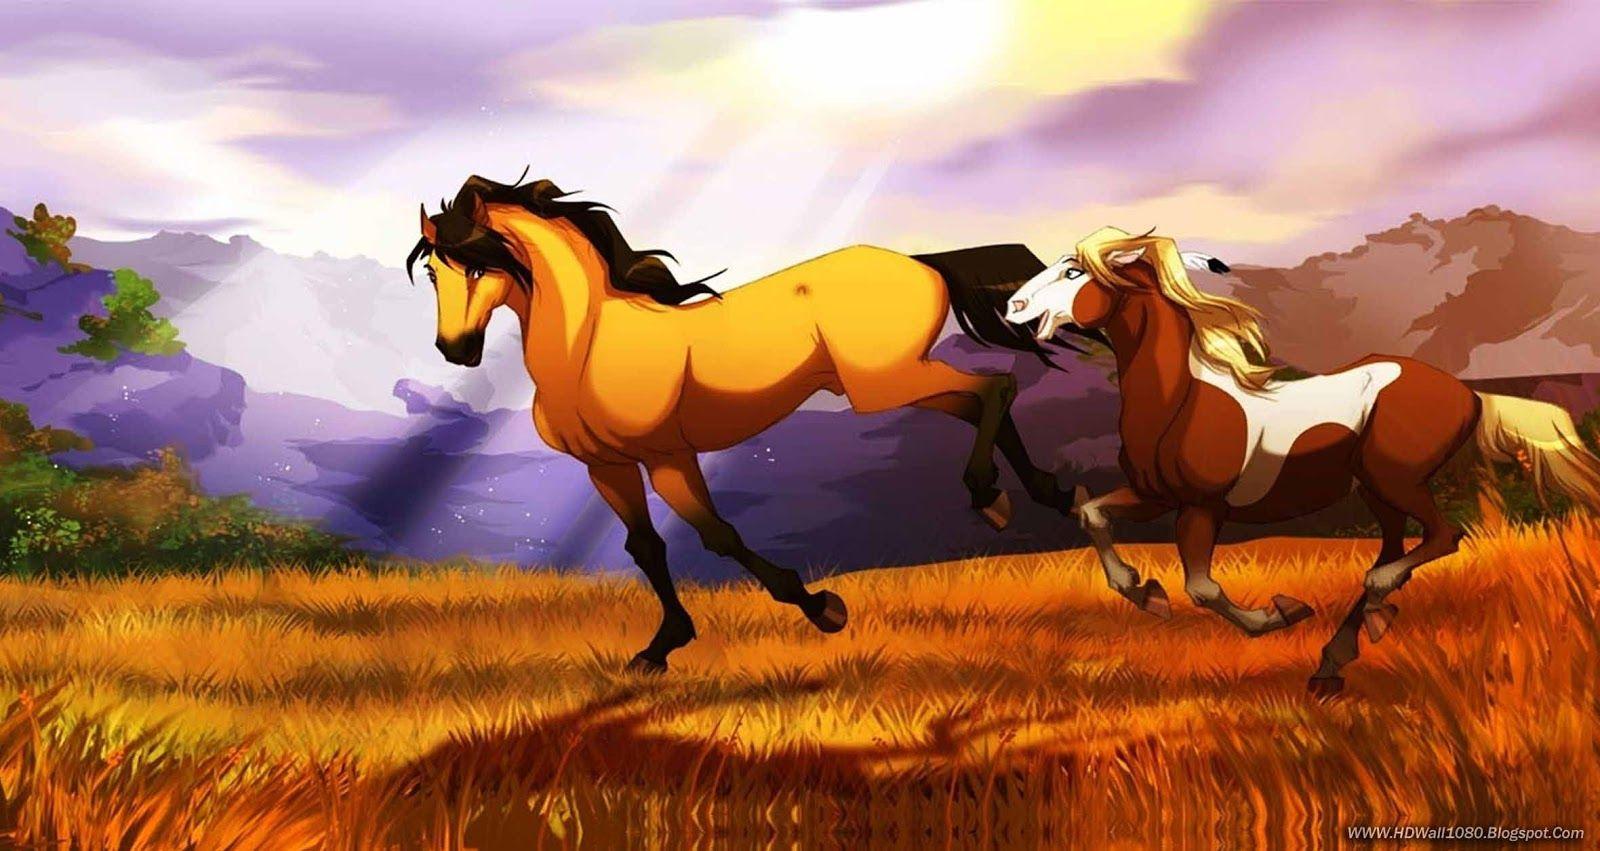 Spirit! Movie. Best Childhood Ever!. Spirit horse